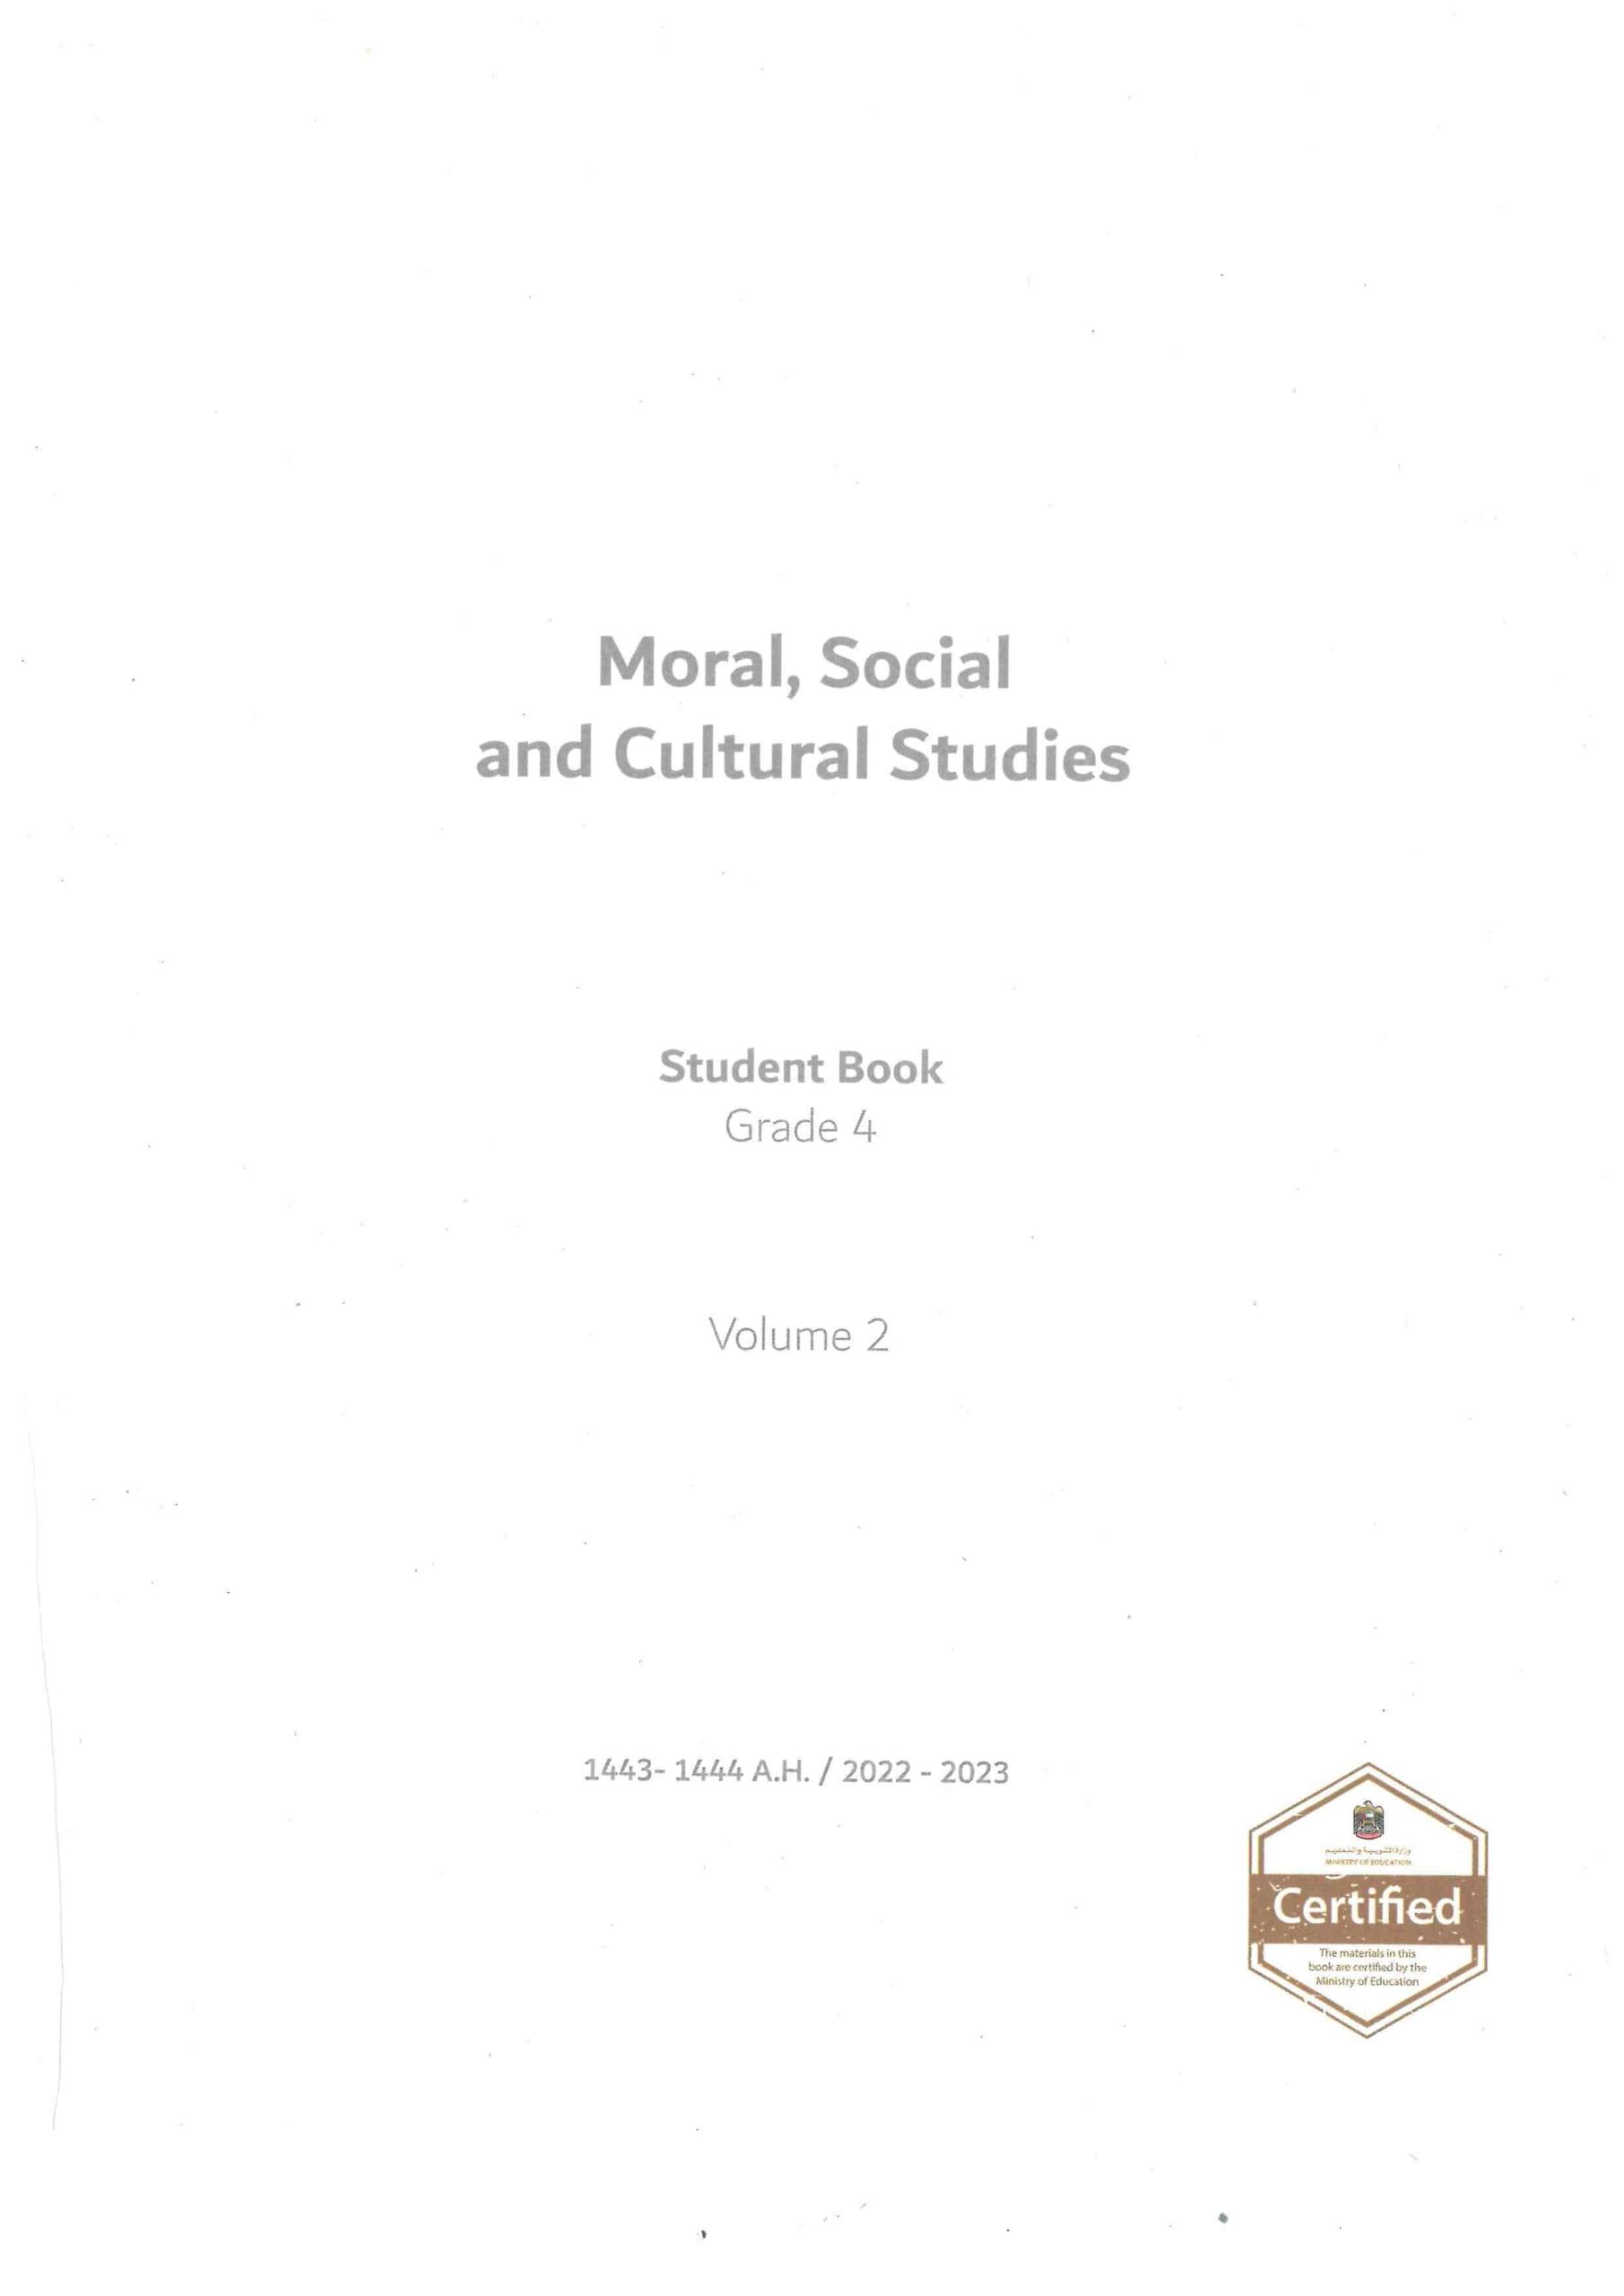 كتاب الطالب لغير الناطقين بها Moral Social & Cultural Studies الصف الرابع الفصل الدراسي الثاني 2022-2023